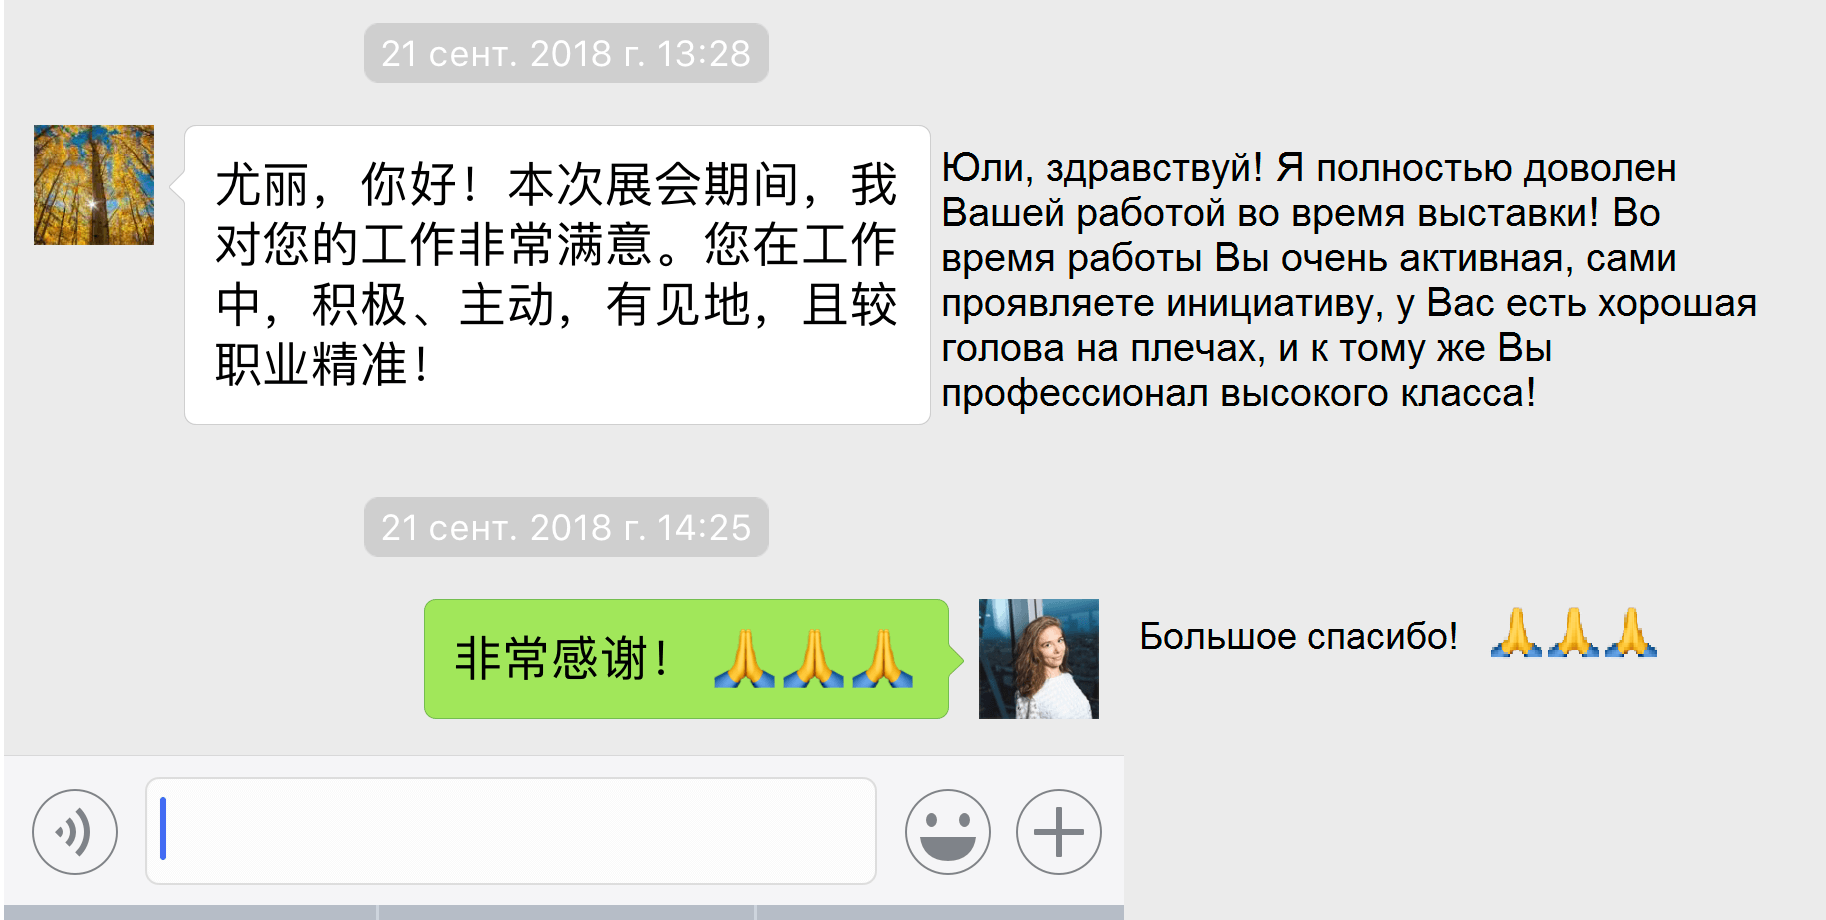 перевести картинку с китайского на русский